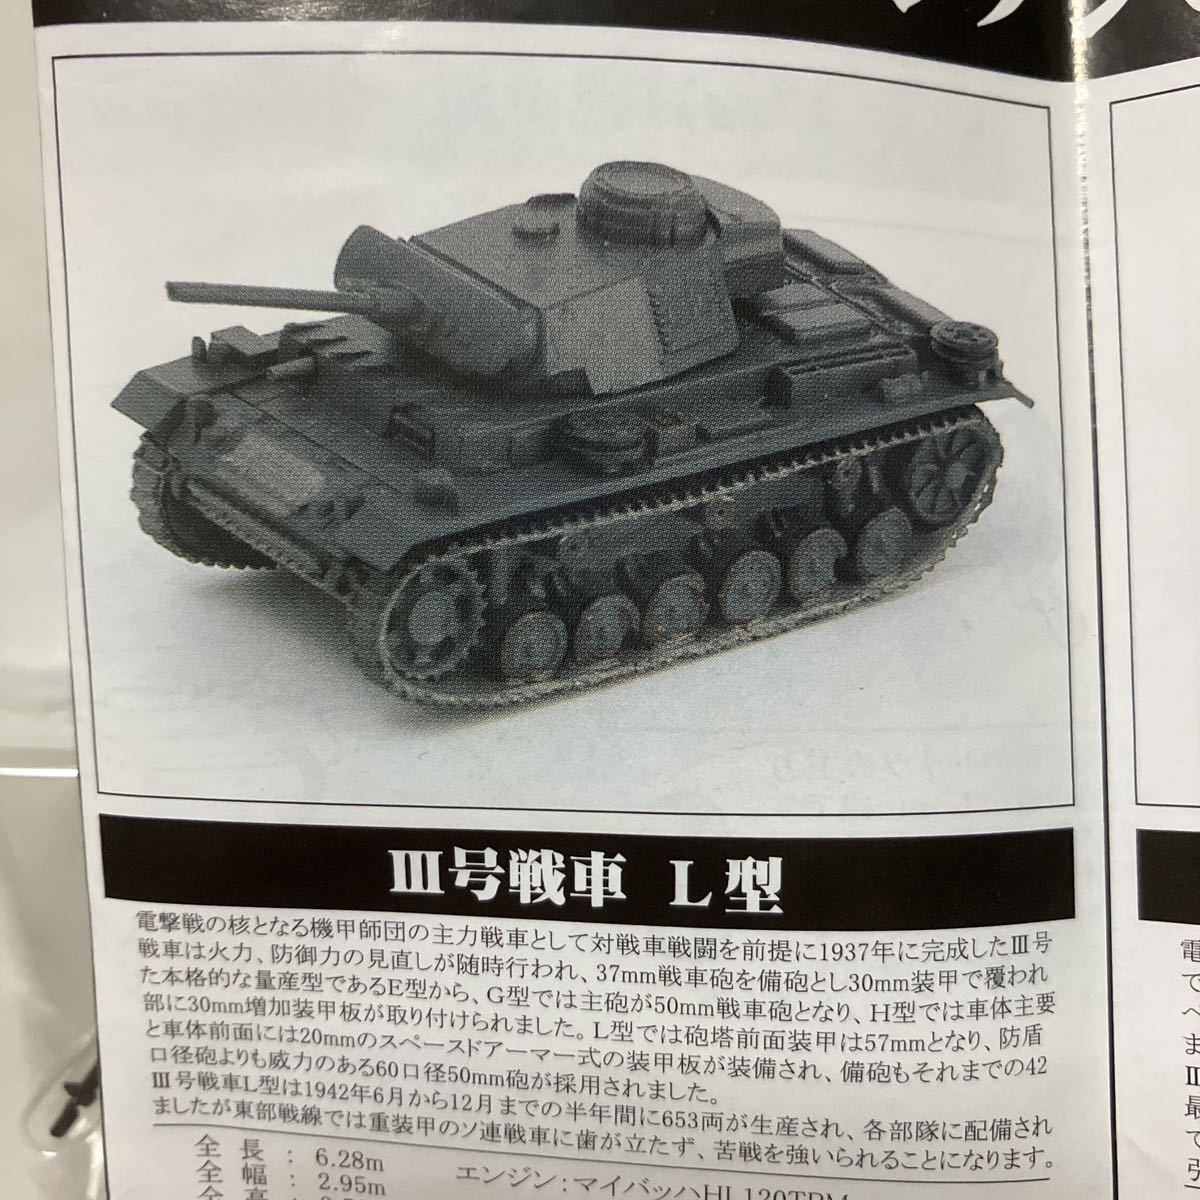 1/144 Ⅲ号戦車L型 #5 パンツァーグラウ塗装 PAK36キット付属 架空戦記 Project Panzer 00 ポピー_画像3